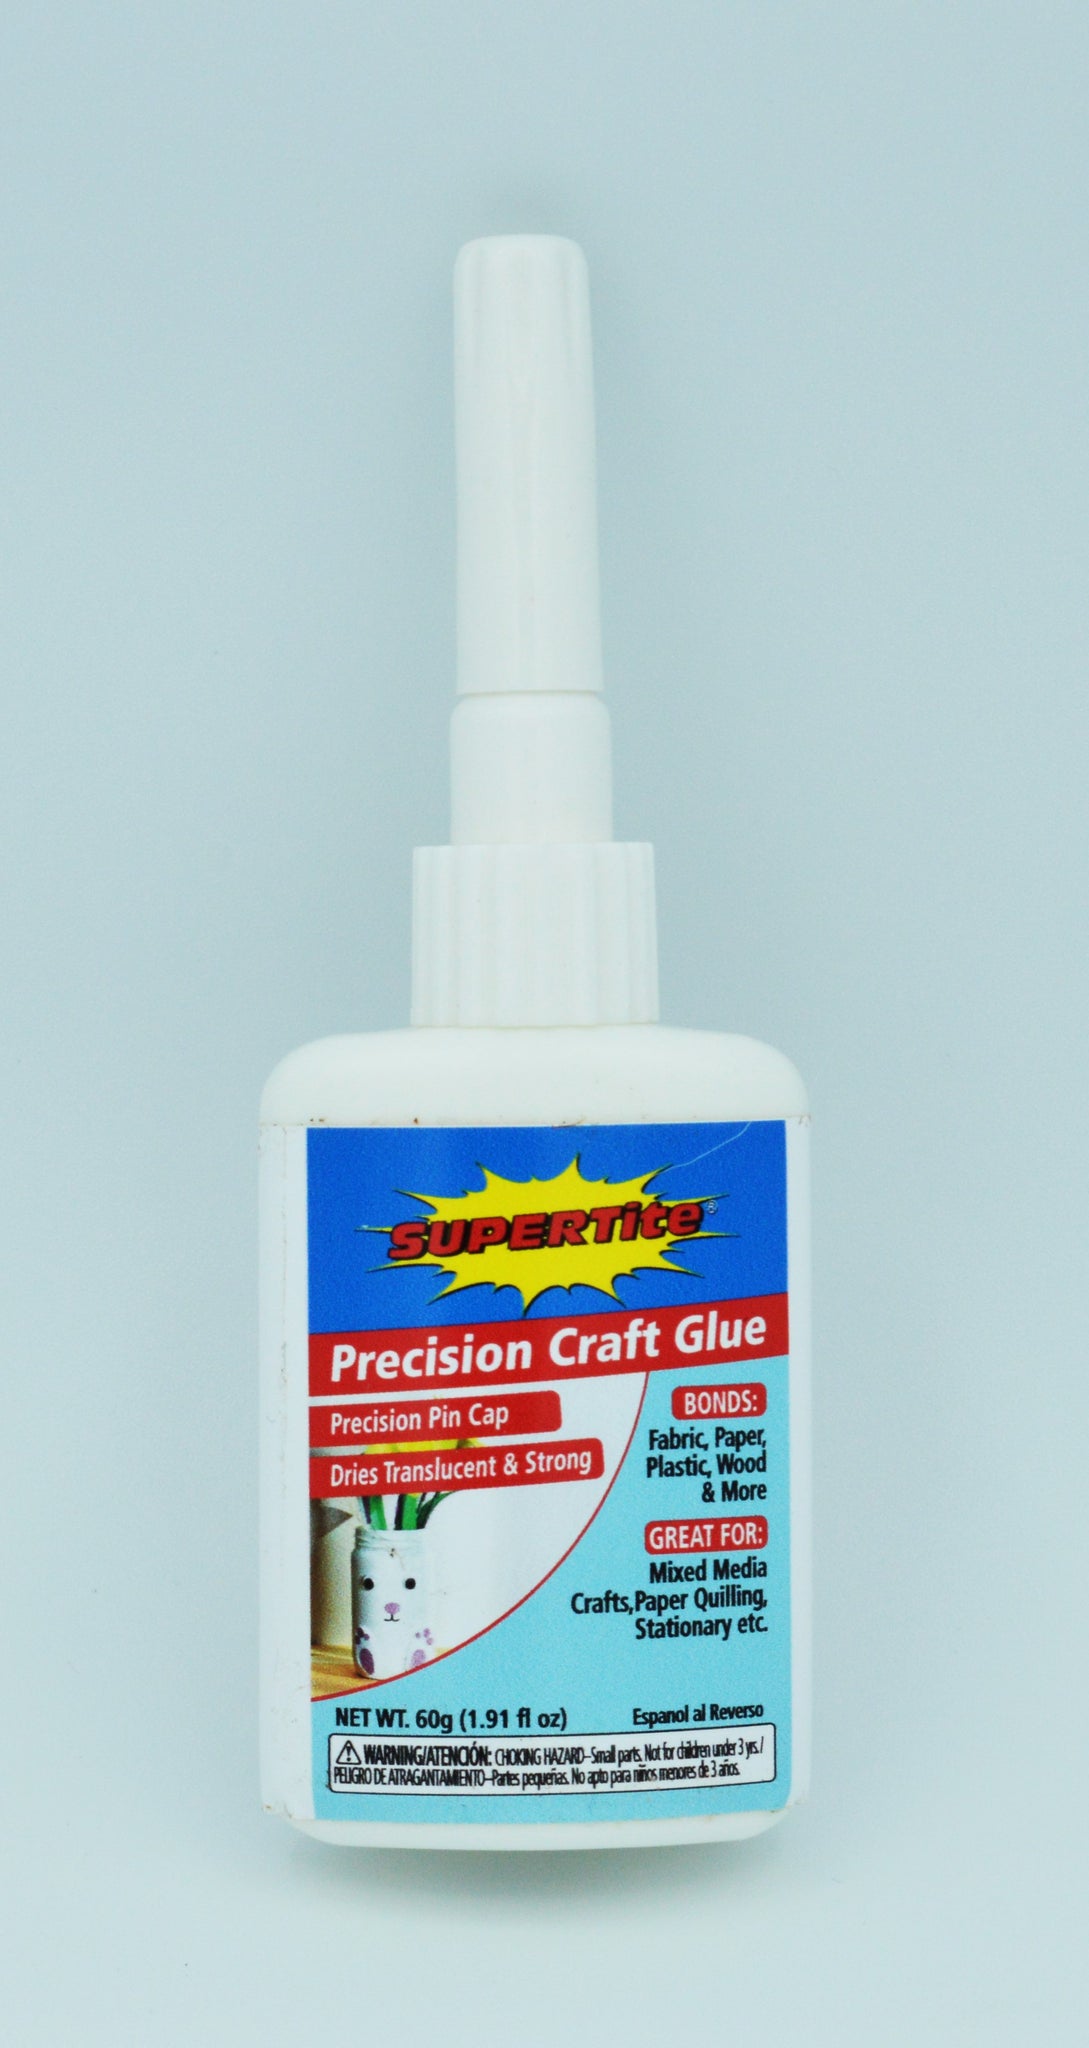 Precision Craft Glue (60g/1.91fl oz) with Pin Cap